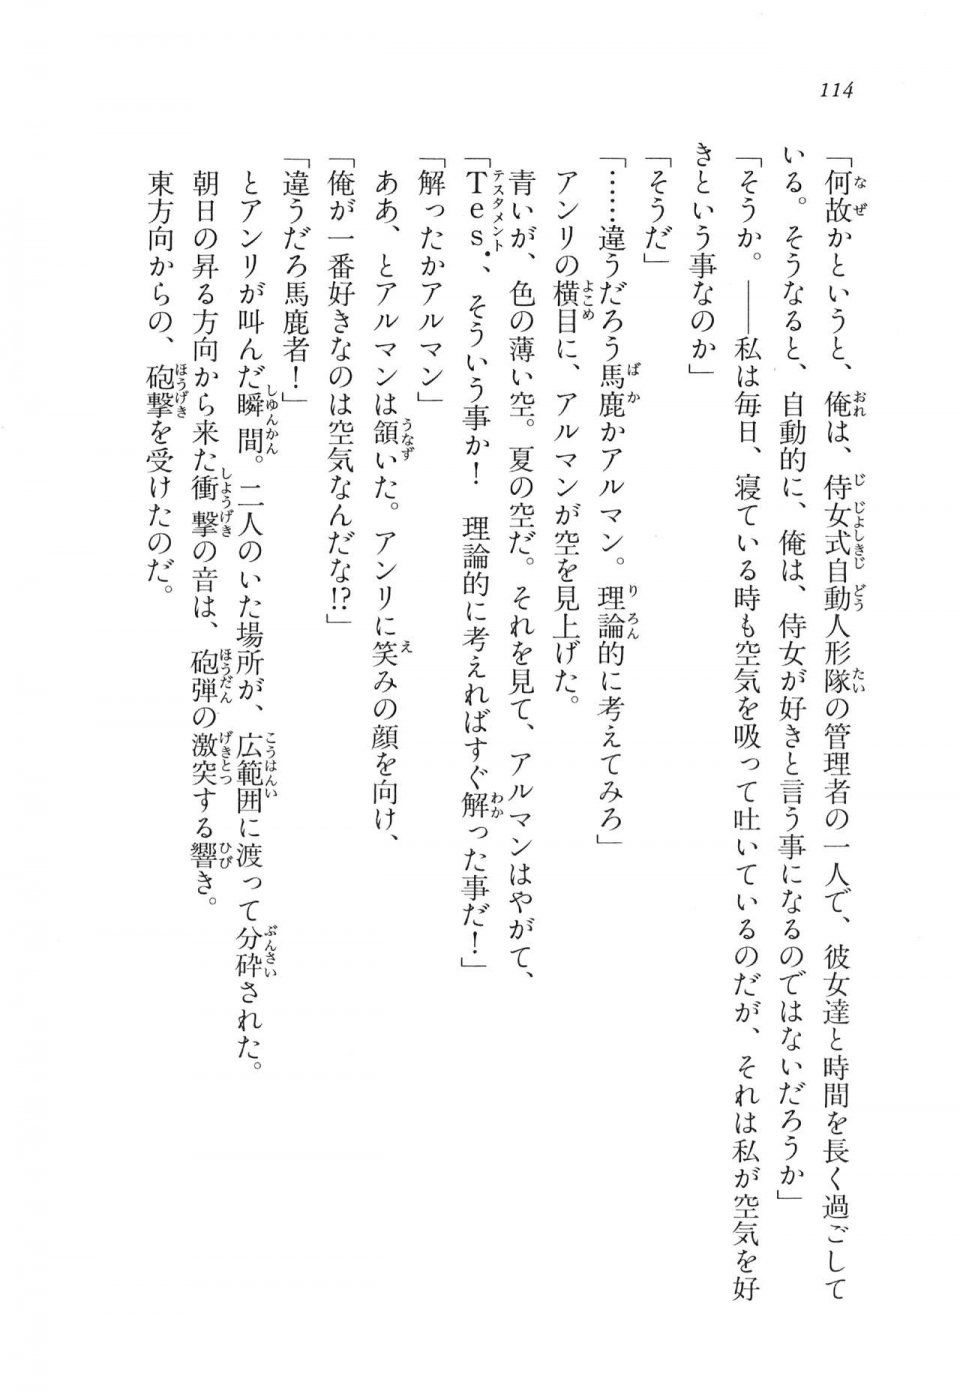 Kyoukai Senjou no Horizon LN Vol 11(5A) - Photo #114